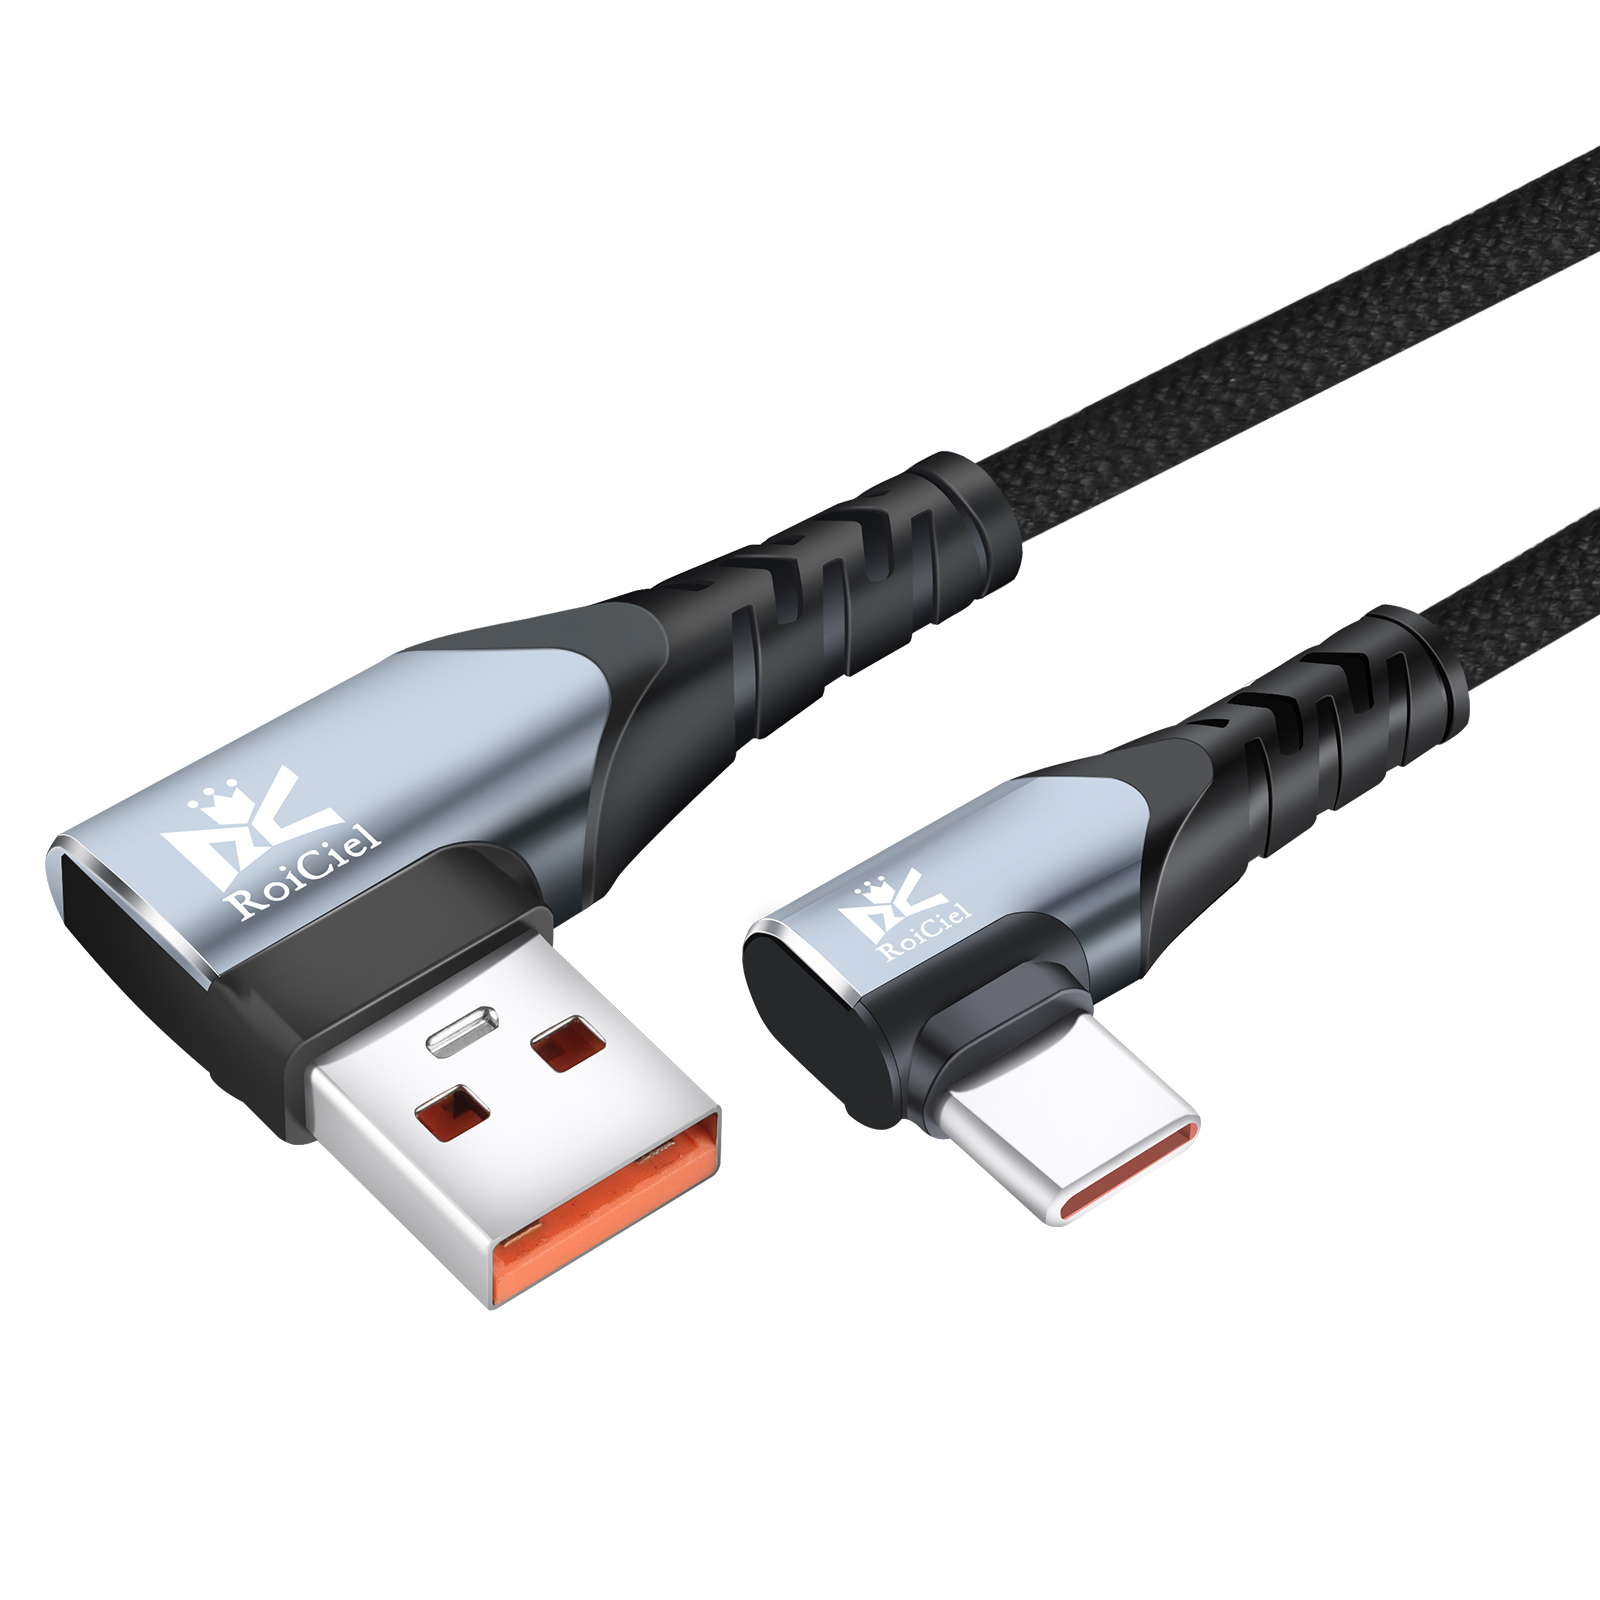 RoiCiel L字型コネクター USB-A to USB-C ケーブル最大66W出力対応11V 6A急速充電 USB3.0 最大5Gbpsデータ転送 Type-Cアンドロイド スマホ その他USB-C機器対応